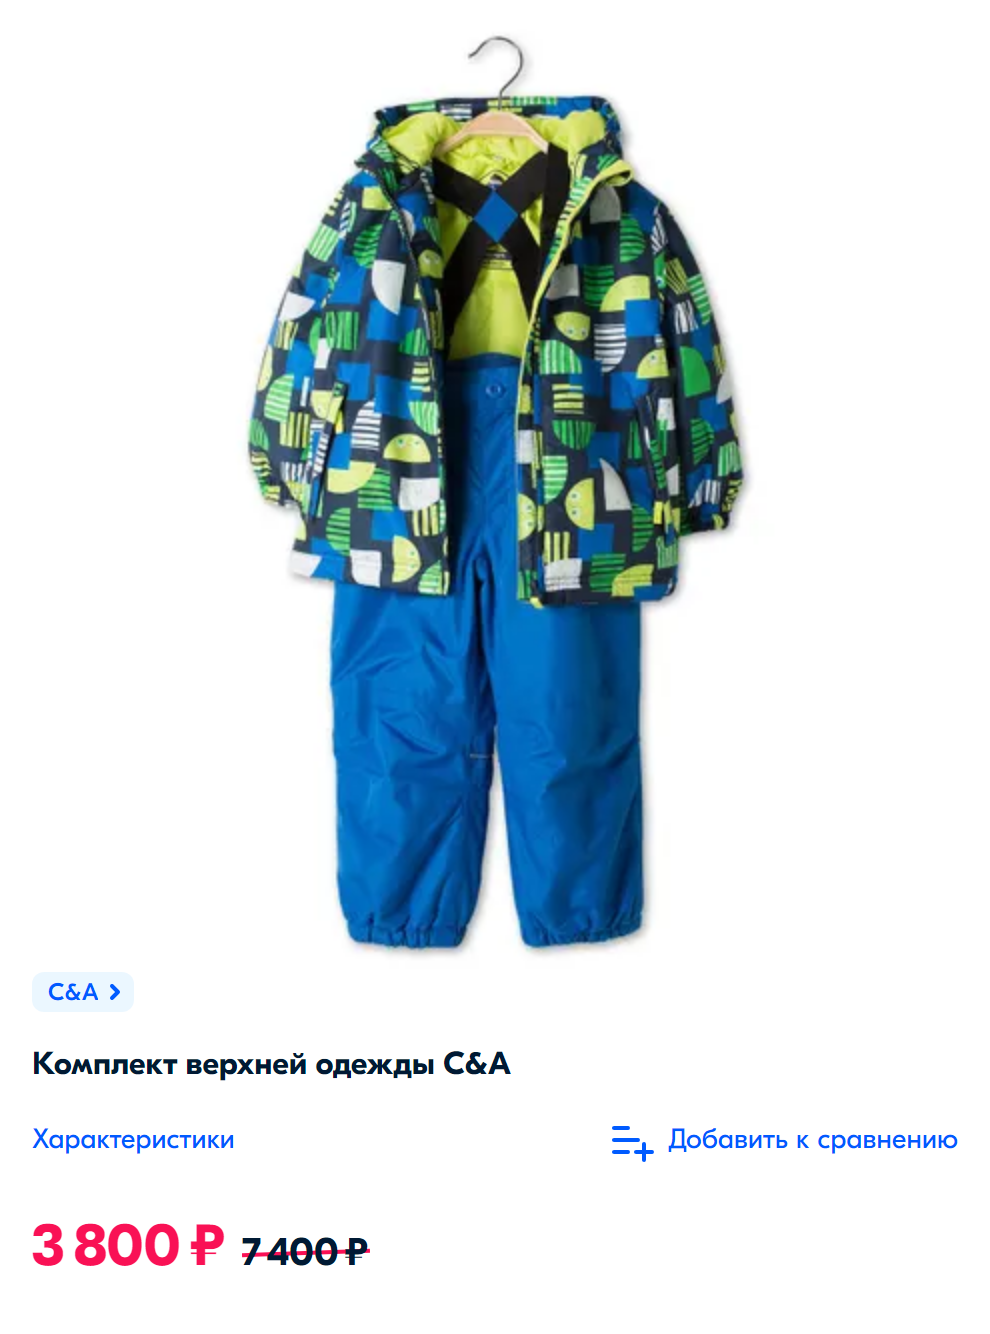 Для сравнения: похожий костюм из водоотталкивающей мембраны и с аналогичным утеплителем в магазине стоит 3800 ₽. Источник: ozon.ru